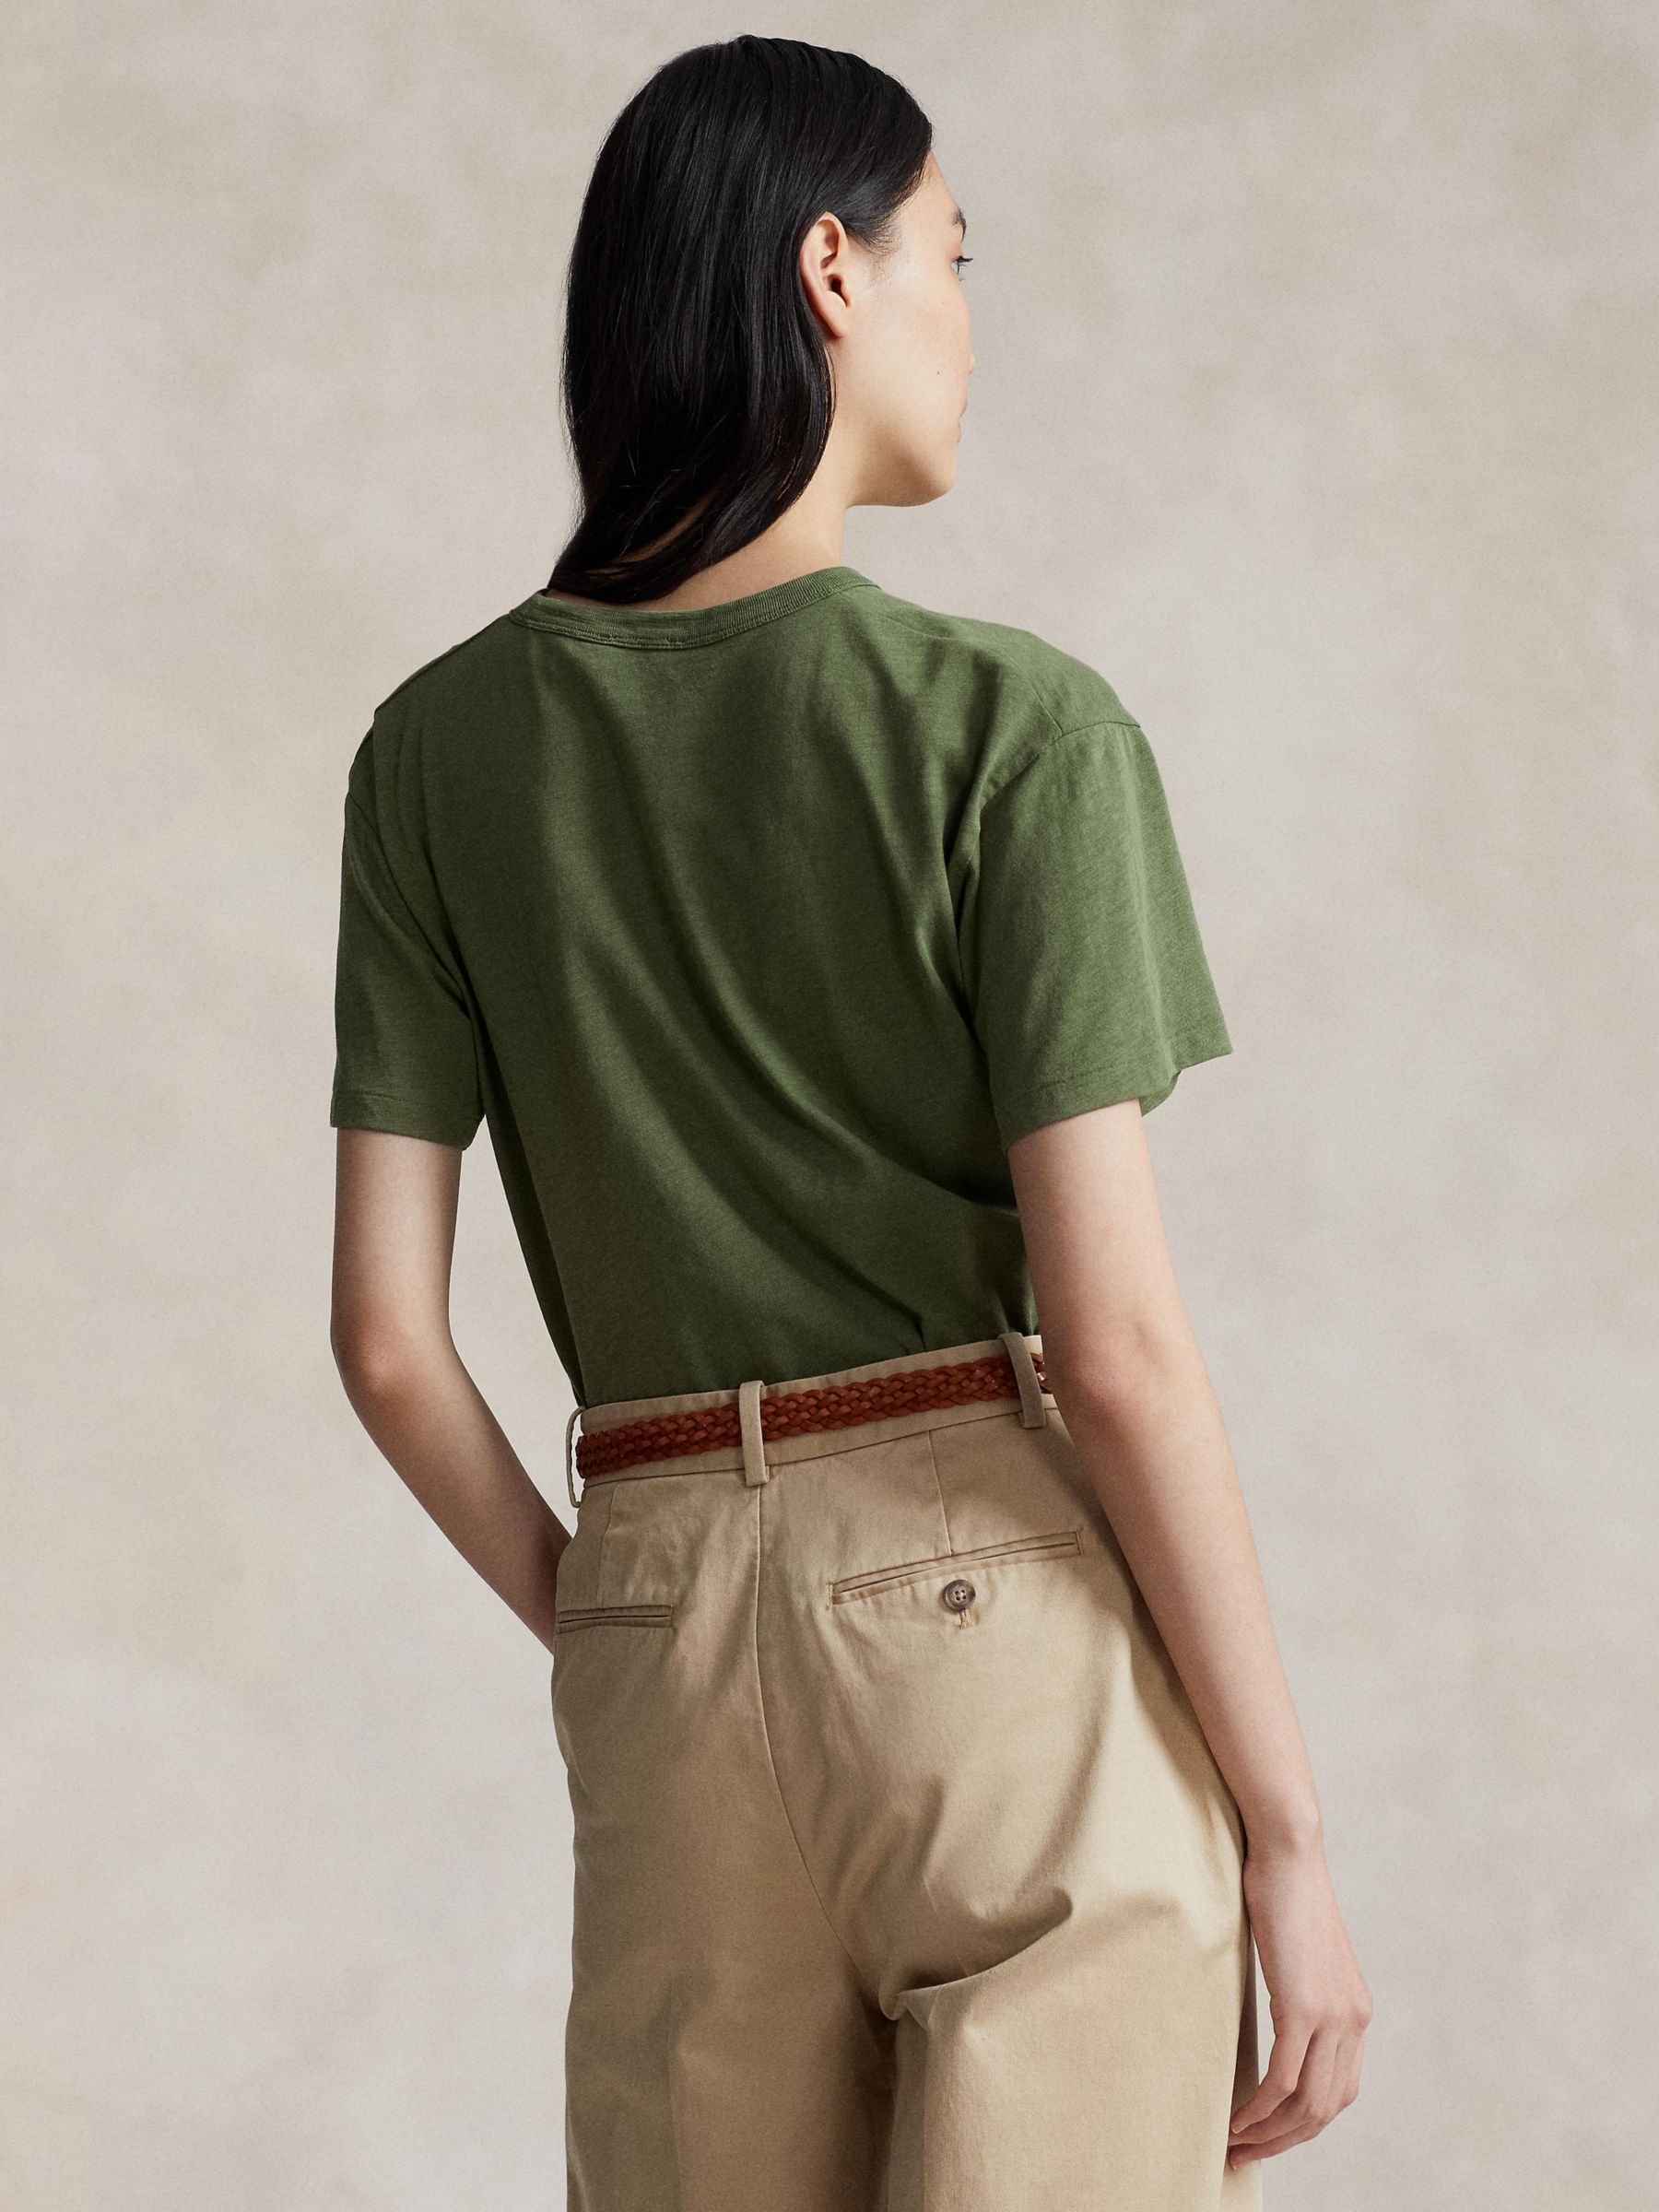 Polo Ralph Lauren Bear Graphic T-Shirt, Green, M